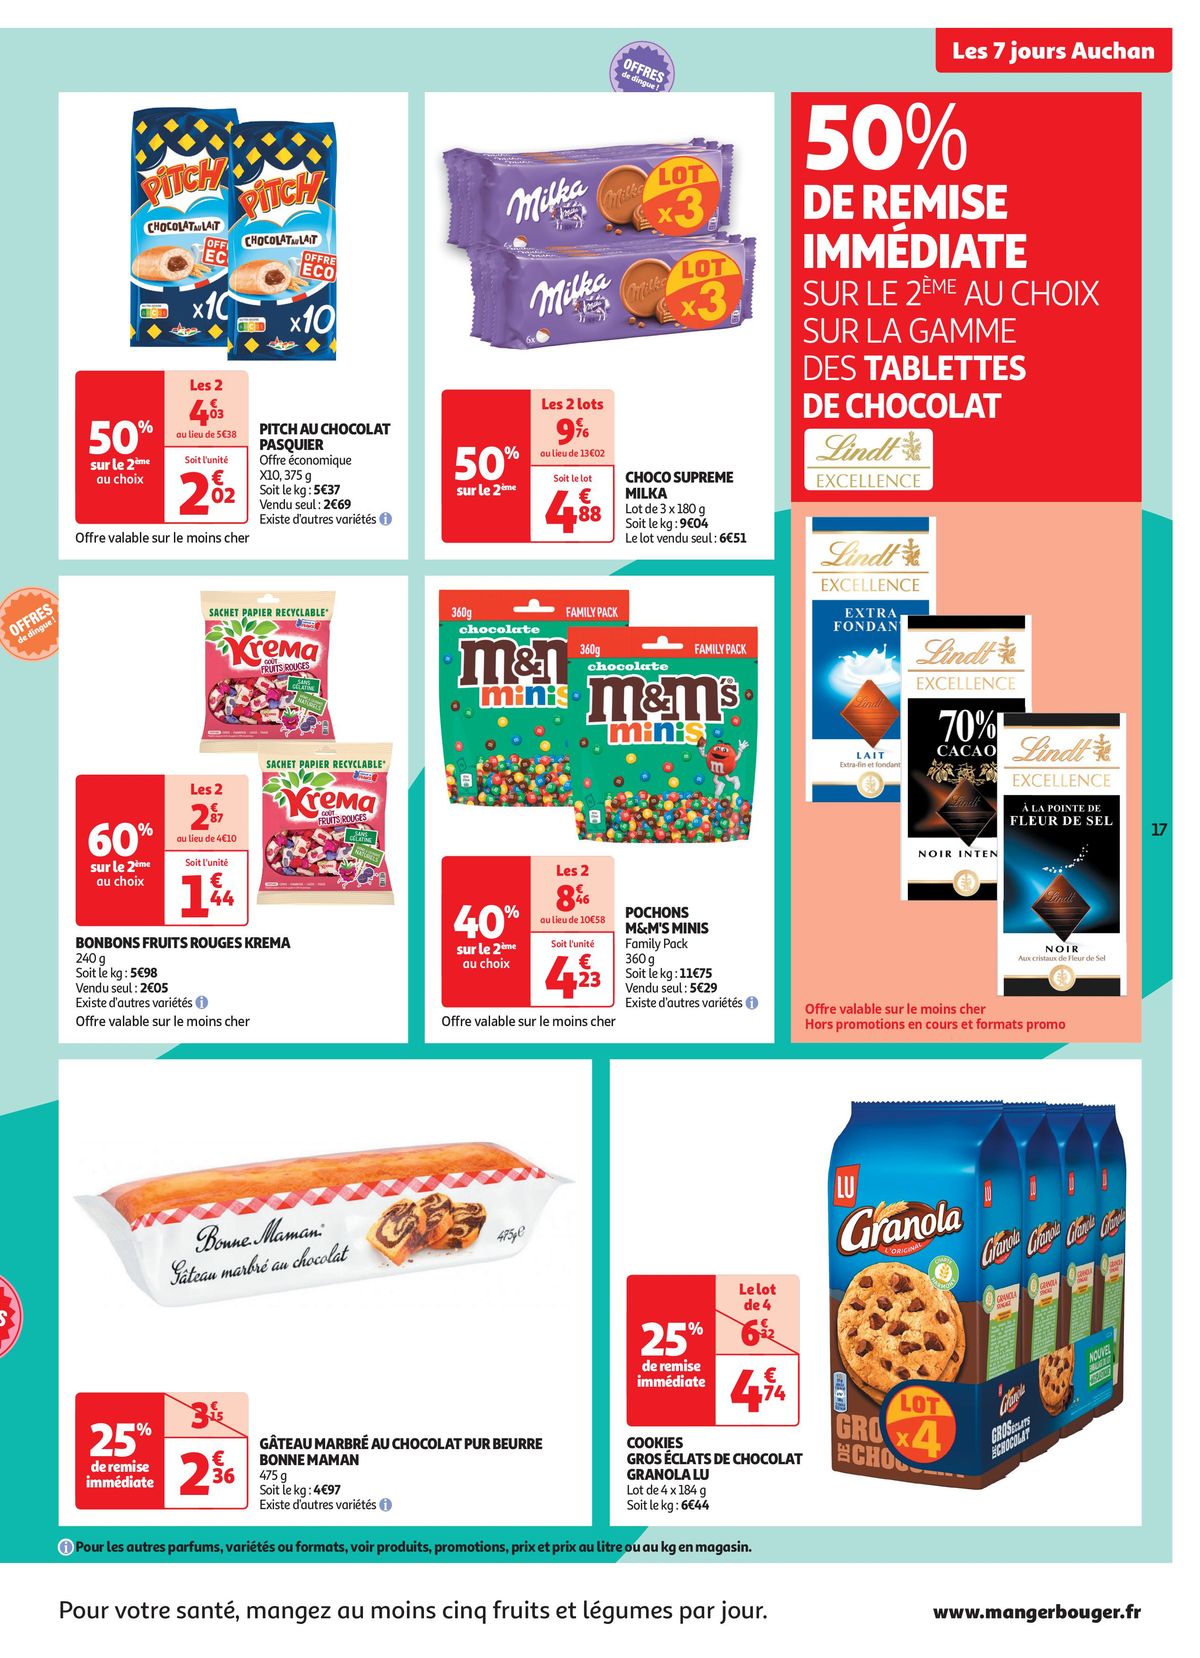 Catalogue C'est les 7 jours Auchan dans votre super !, page 00017